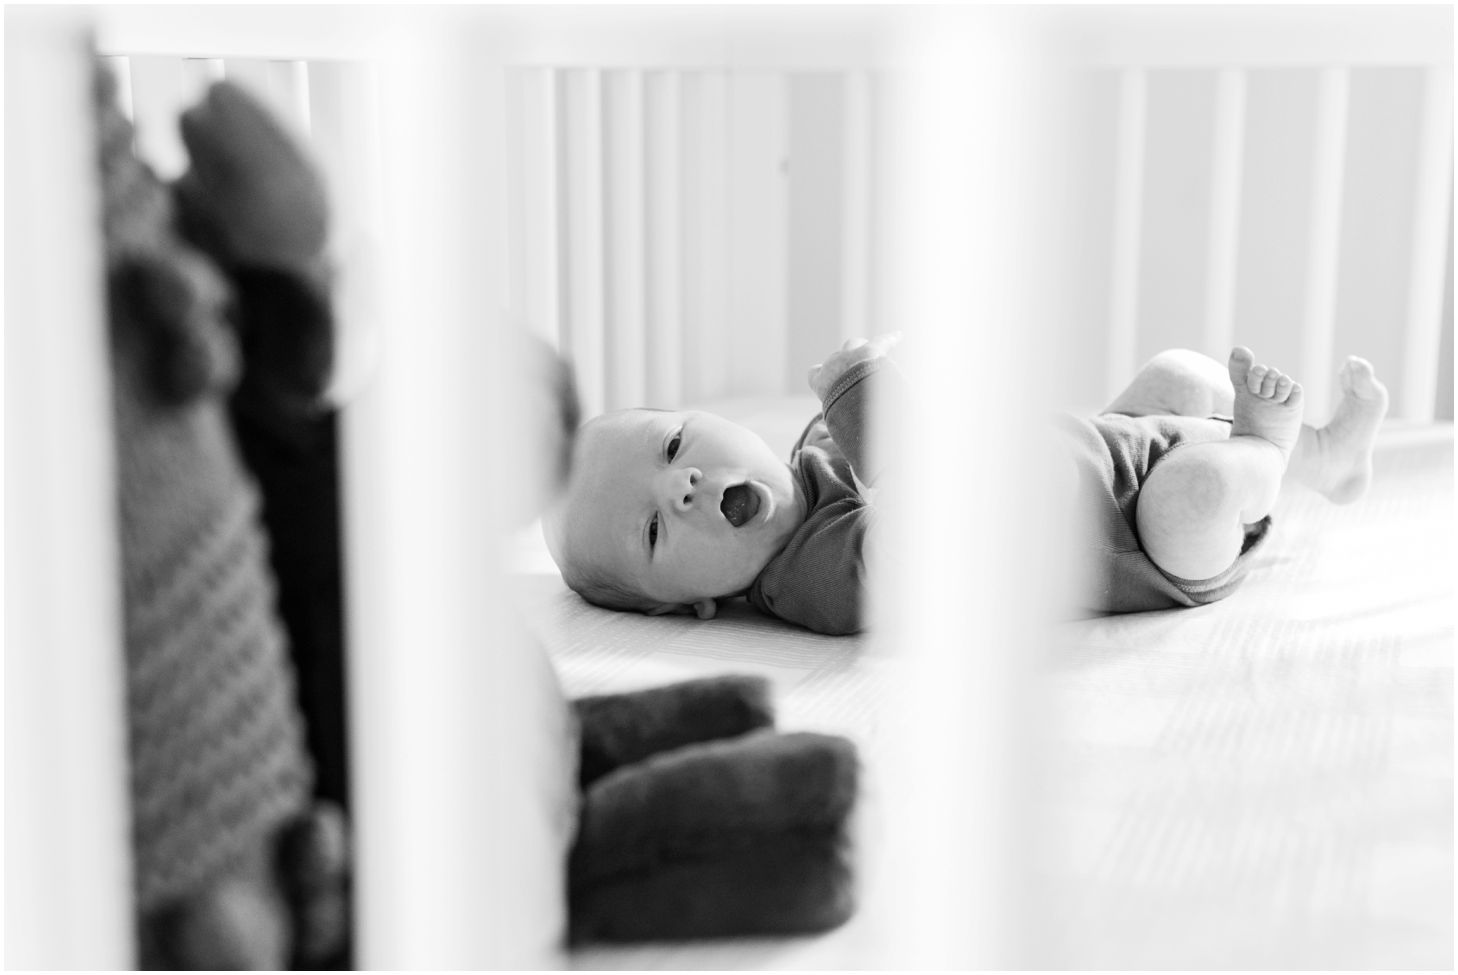 newborn yawning in crib, black and white